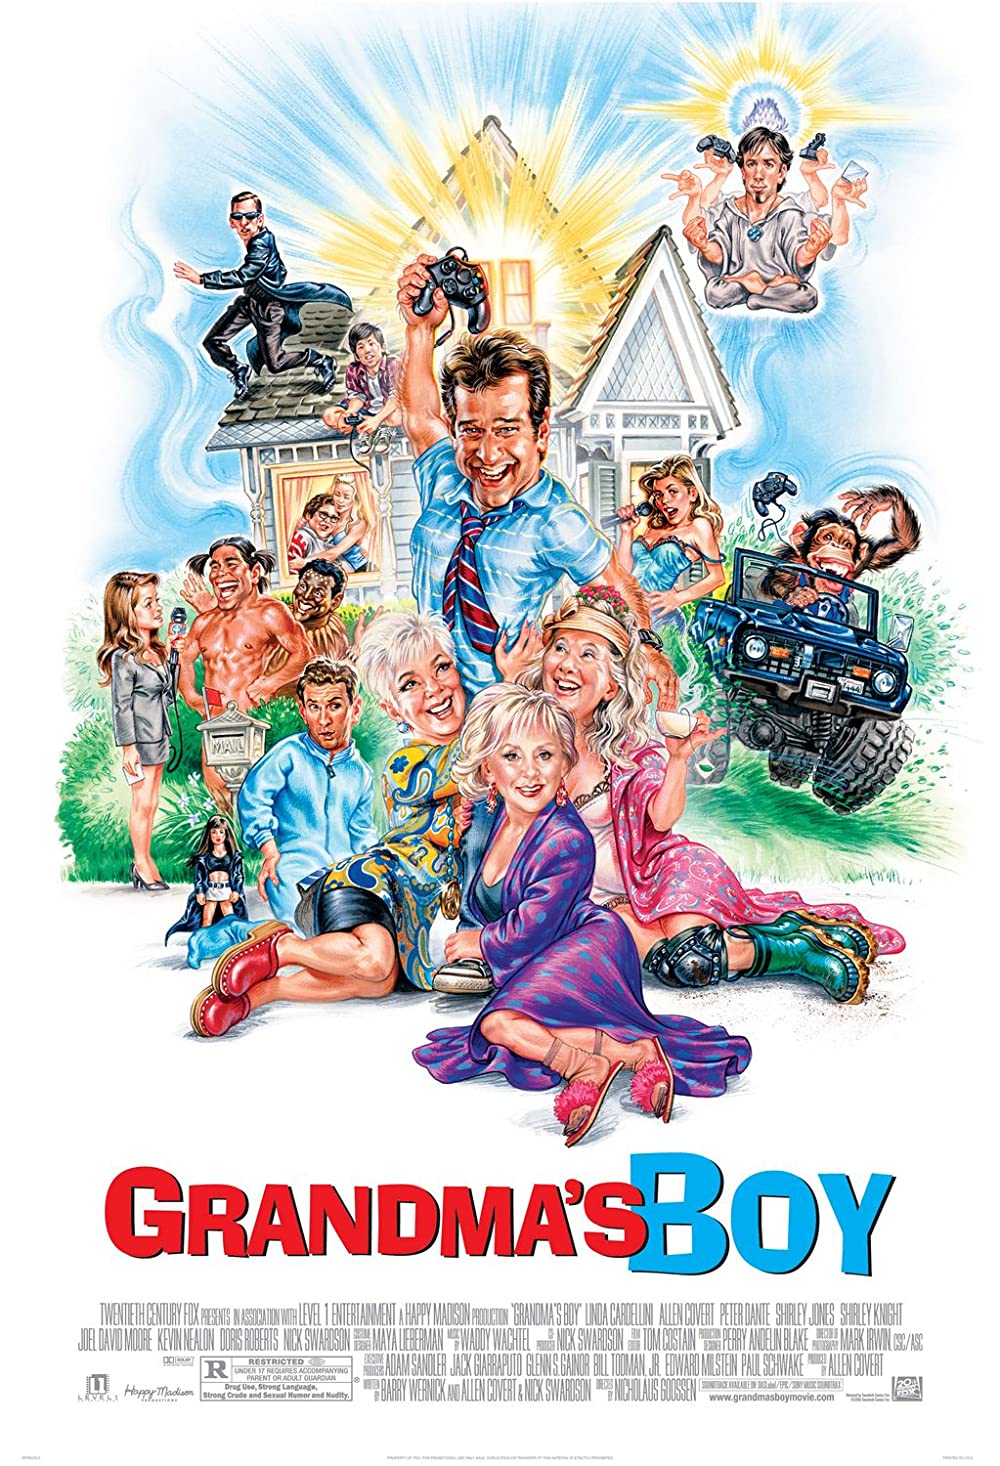 Filmbeschreibung zu Grandma's Boy